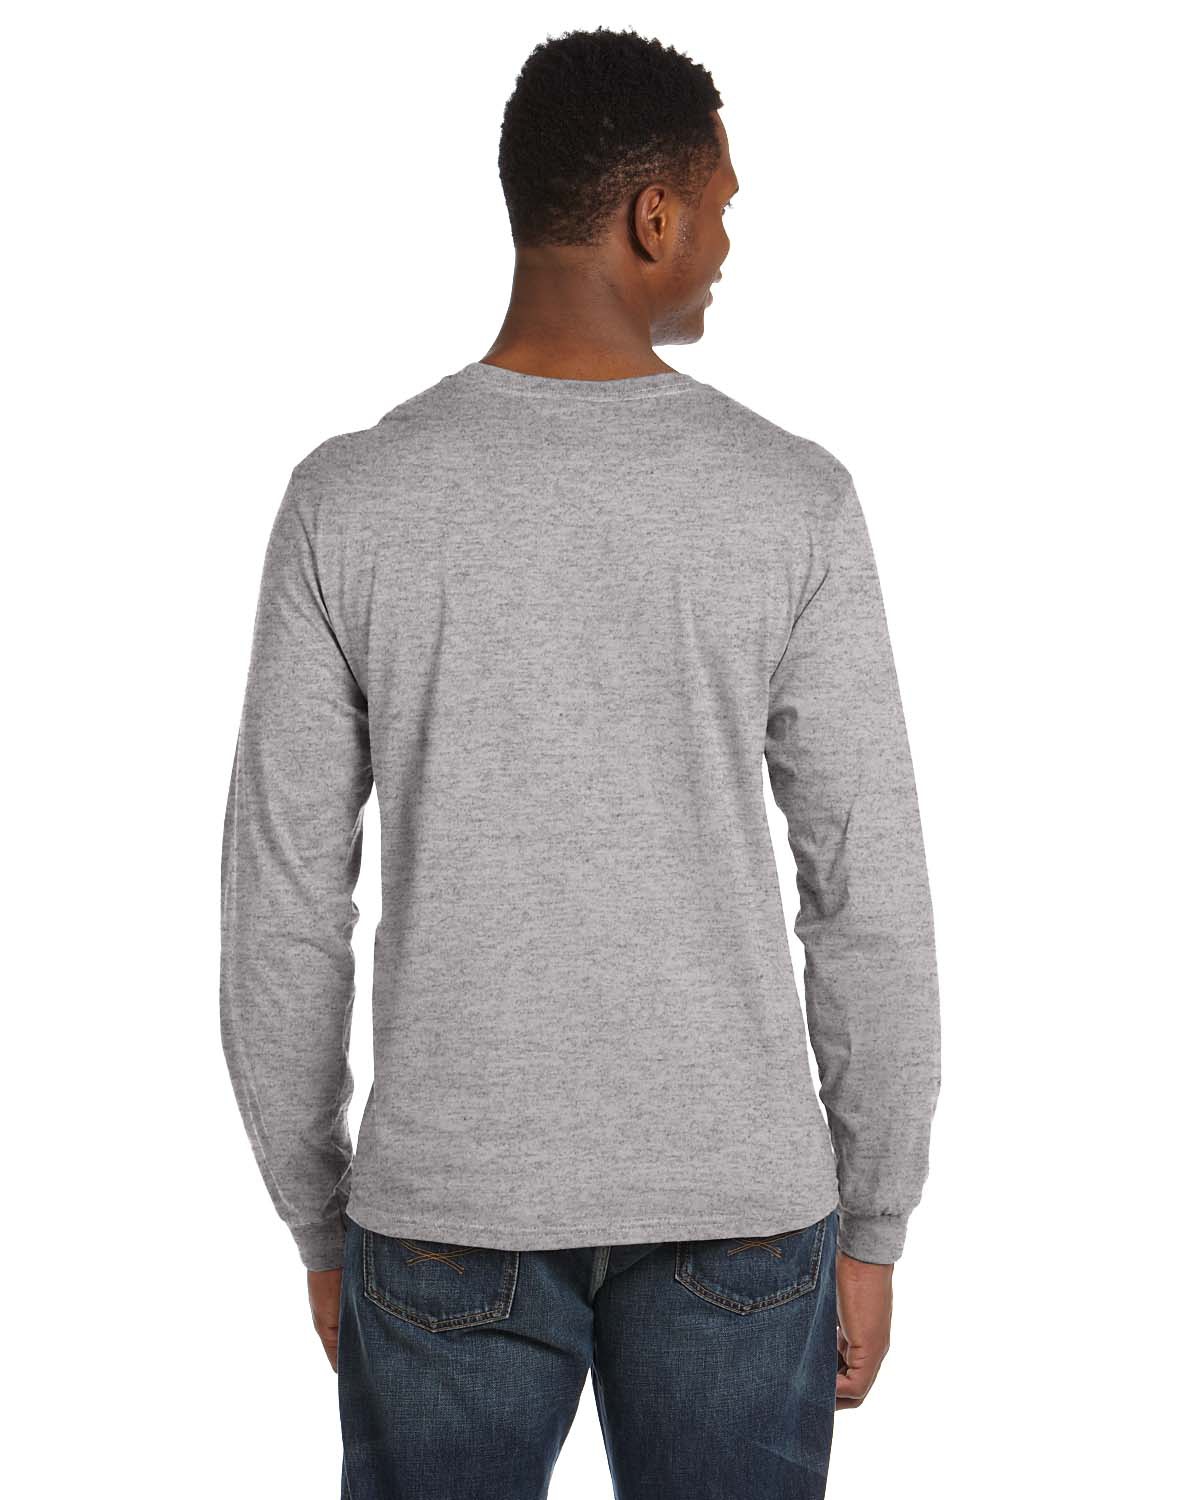 'Anvil 949 Adult Lightweight Long Sleeve 4.5 oz T-Shirt'